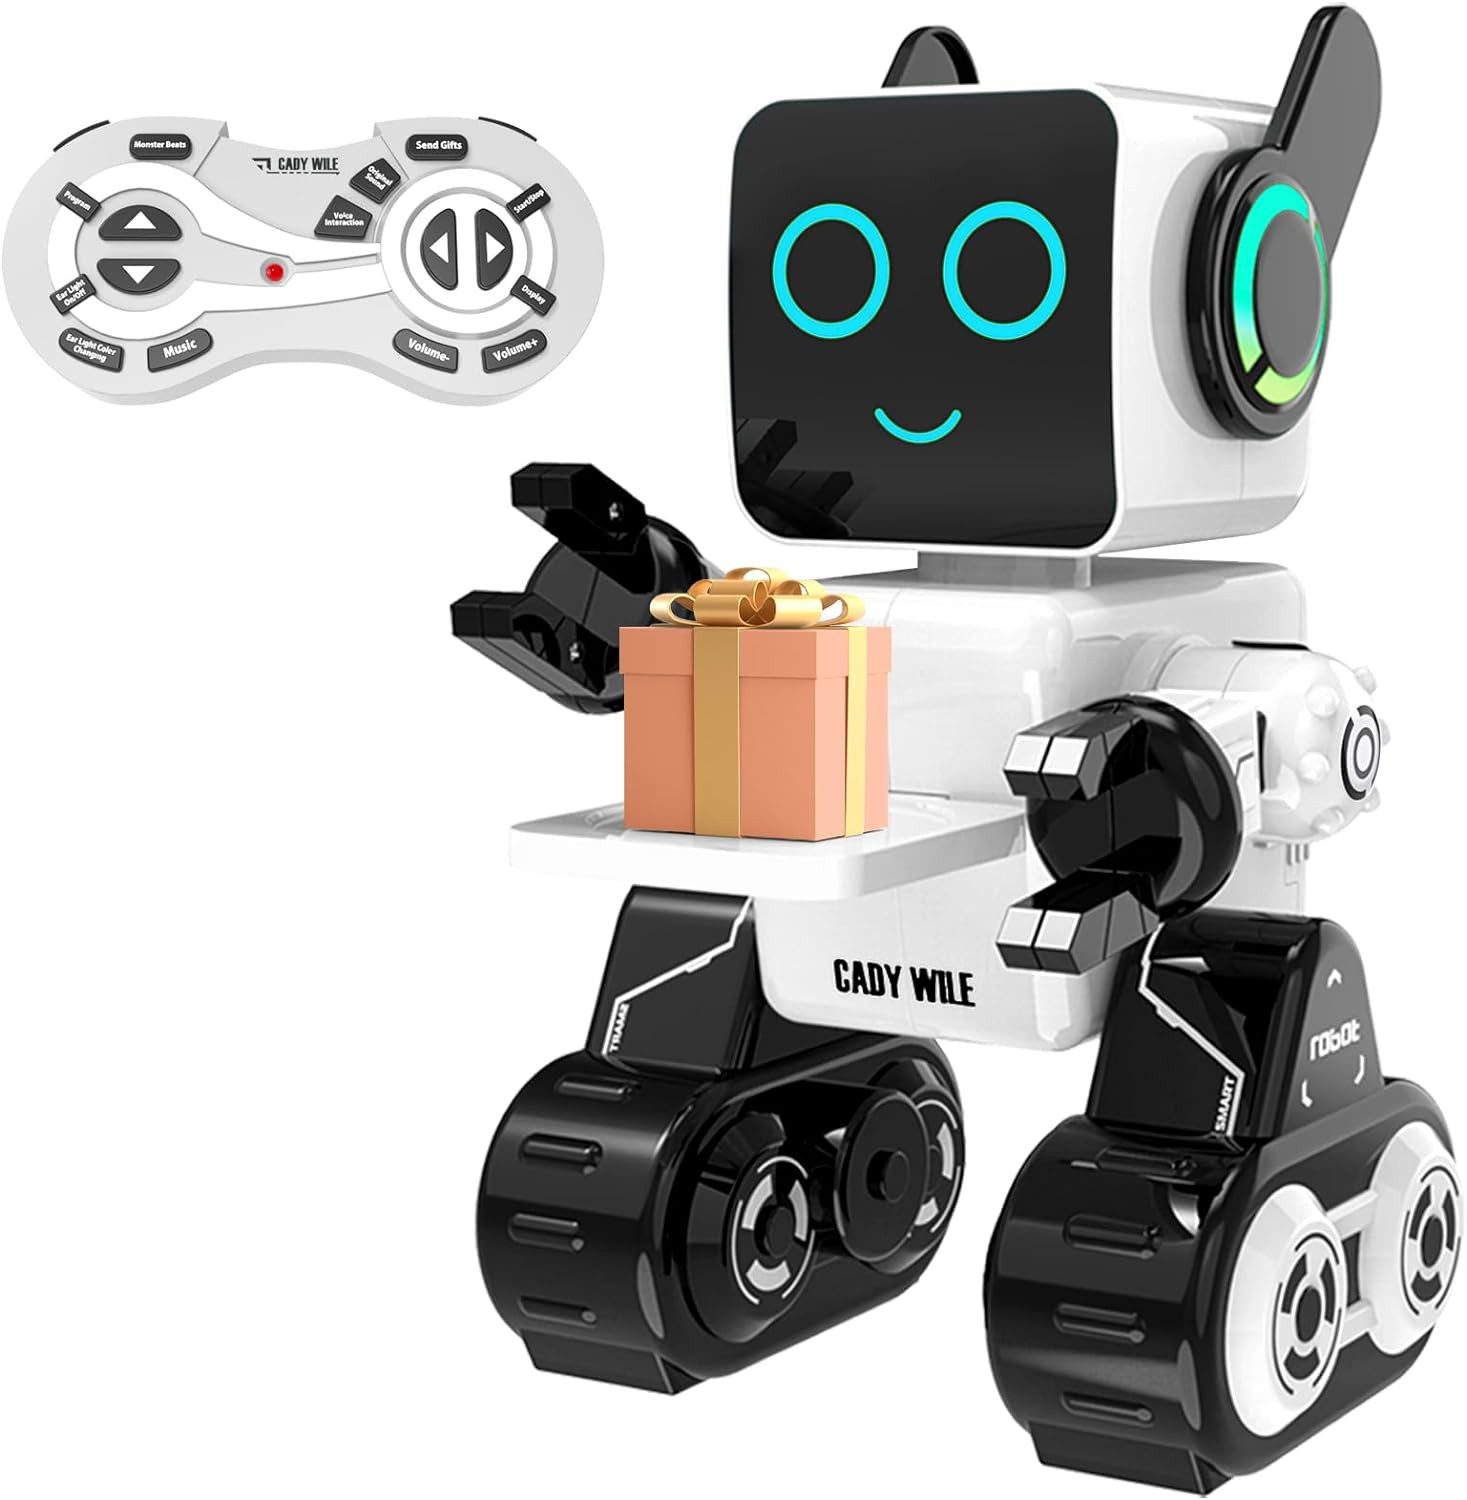 Powerwill Lernroboter Ferngesteuert Roboter Spielzeug für Kinder,Intelligent Programmier (wiederaufladbarer RC-Roboter-Bausatz), LED intelligenter Roboter,spricht Tanzbewegungen,integrierte Münzbank